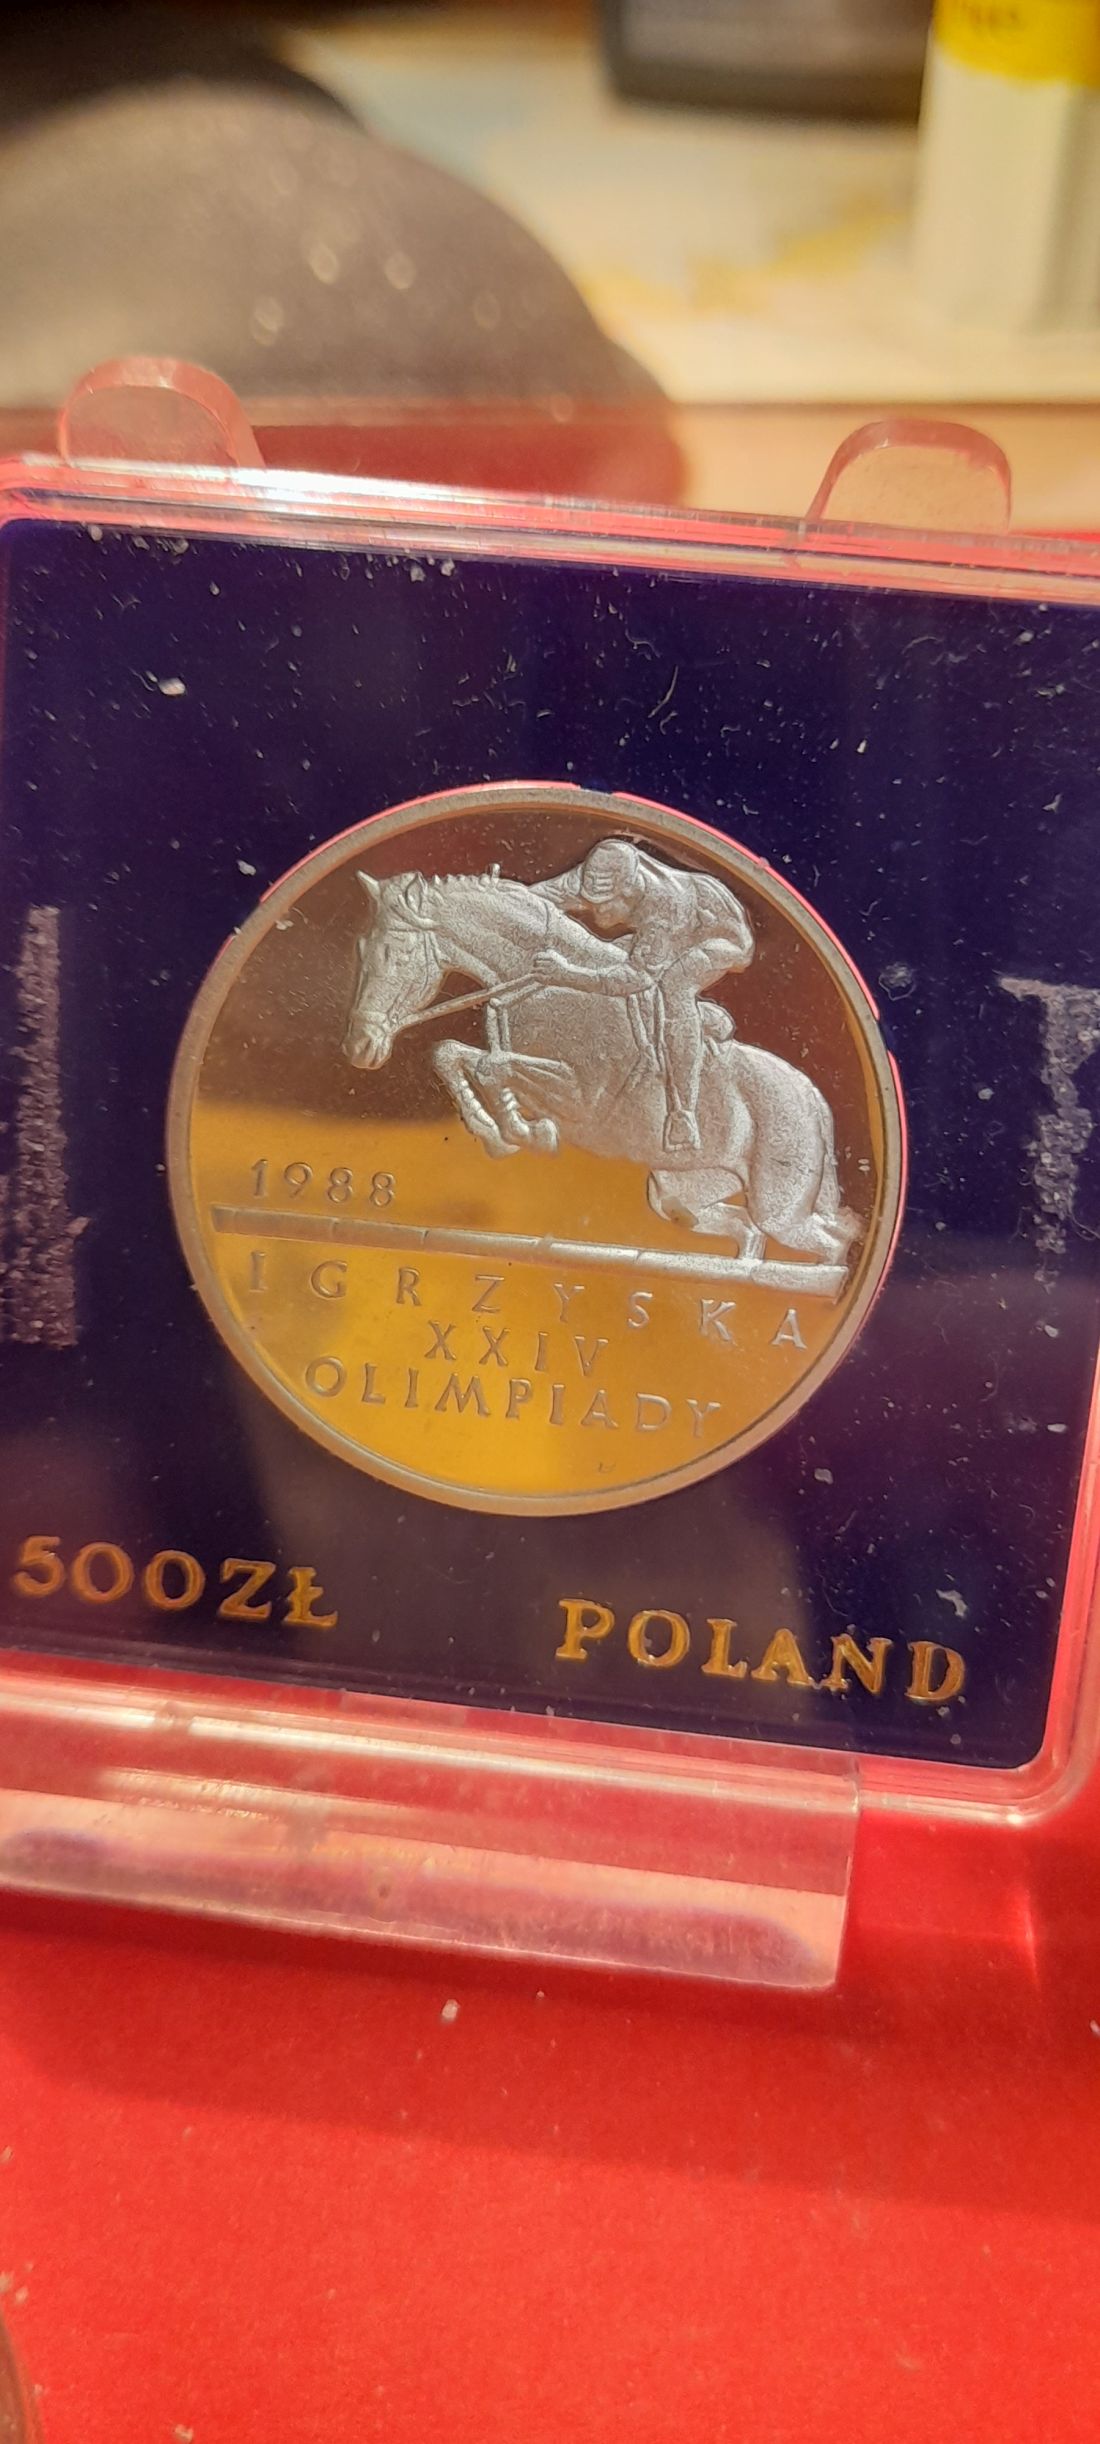  POLSKA  1988 500  ZL  IGRZYSKA OLYMPIADA